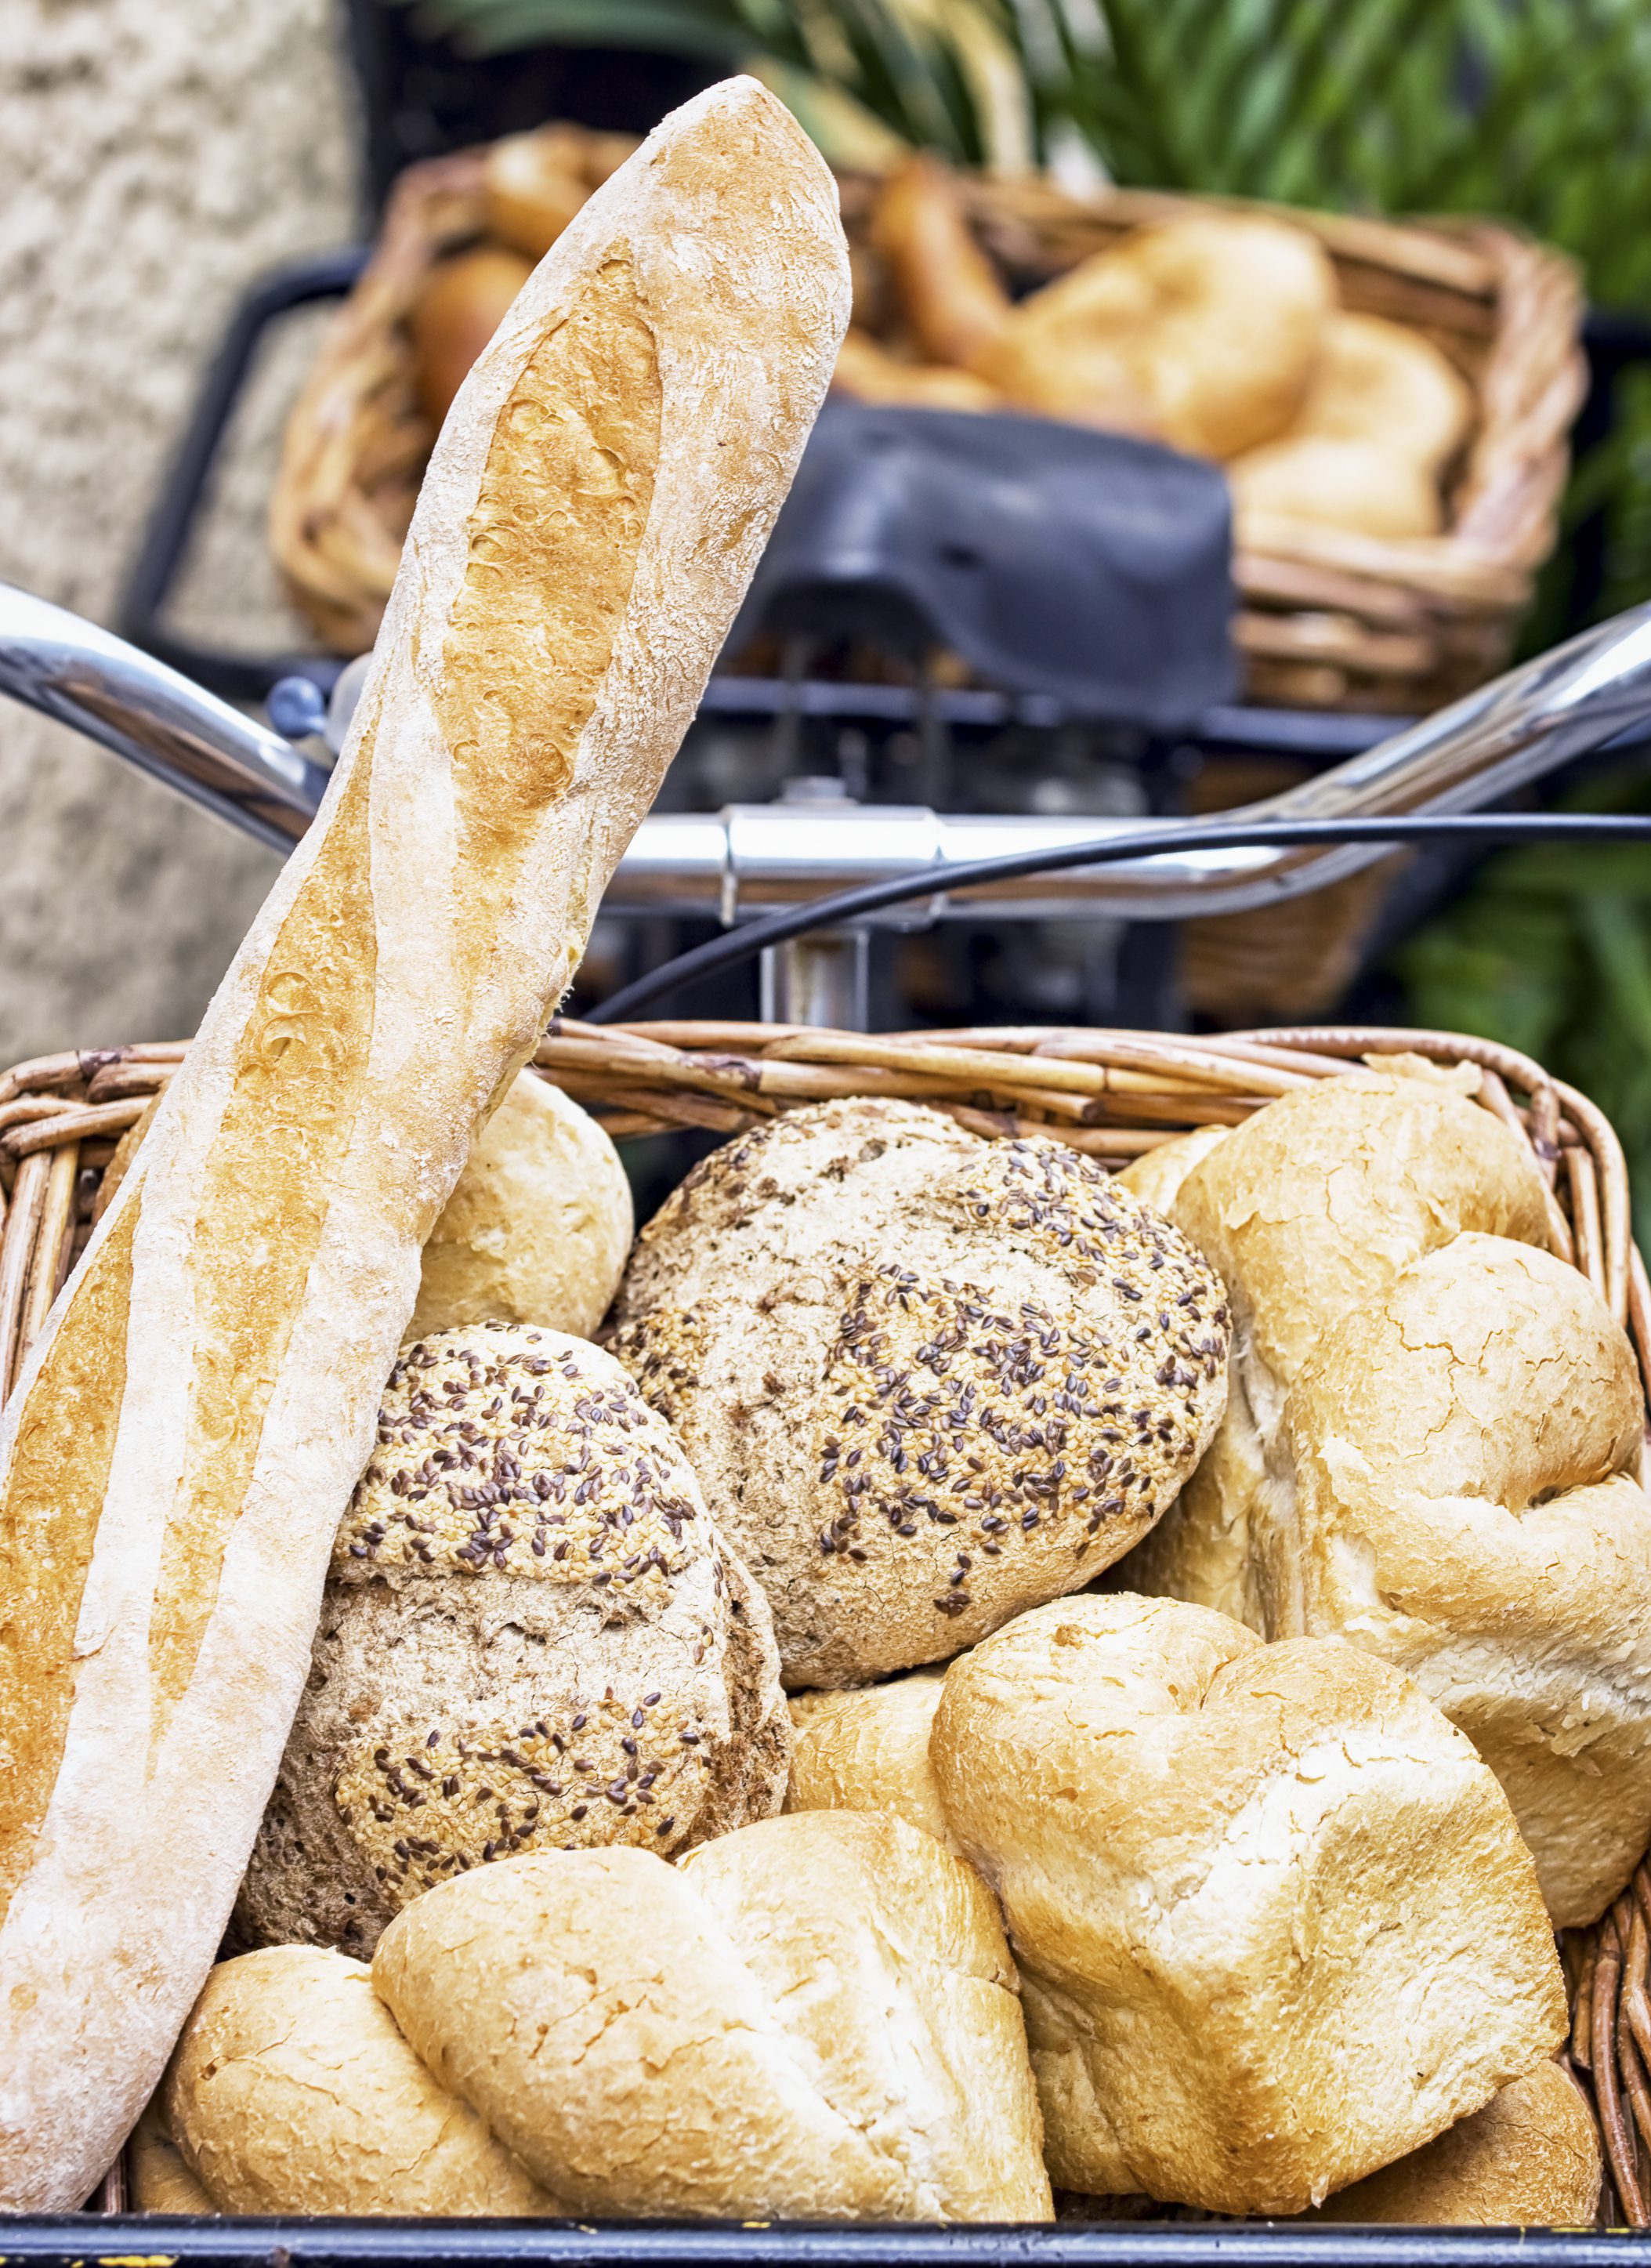 bread in a basket on a bike